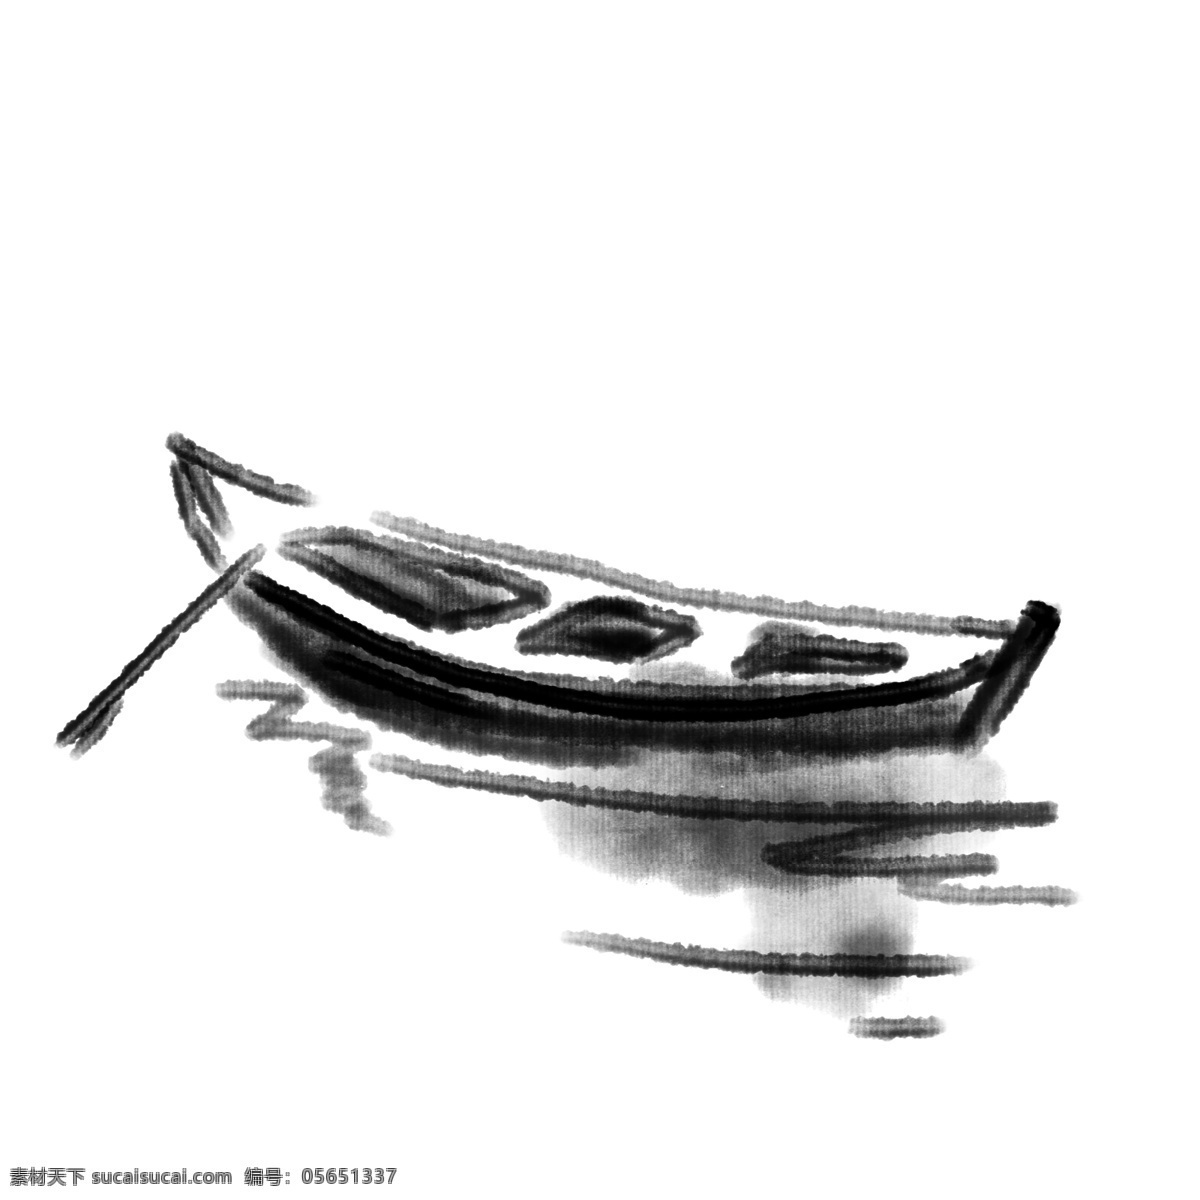 黑色 水墨 小船 插画 船 度假 旅游 黑色小船 水墨风格 水墨小船插画 水墨画 交通 划船 运输